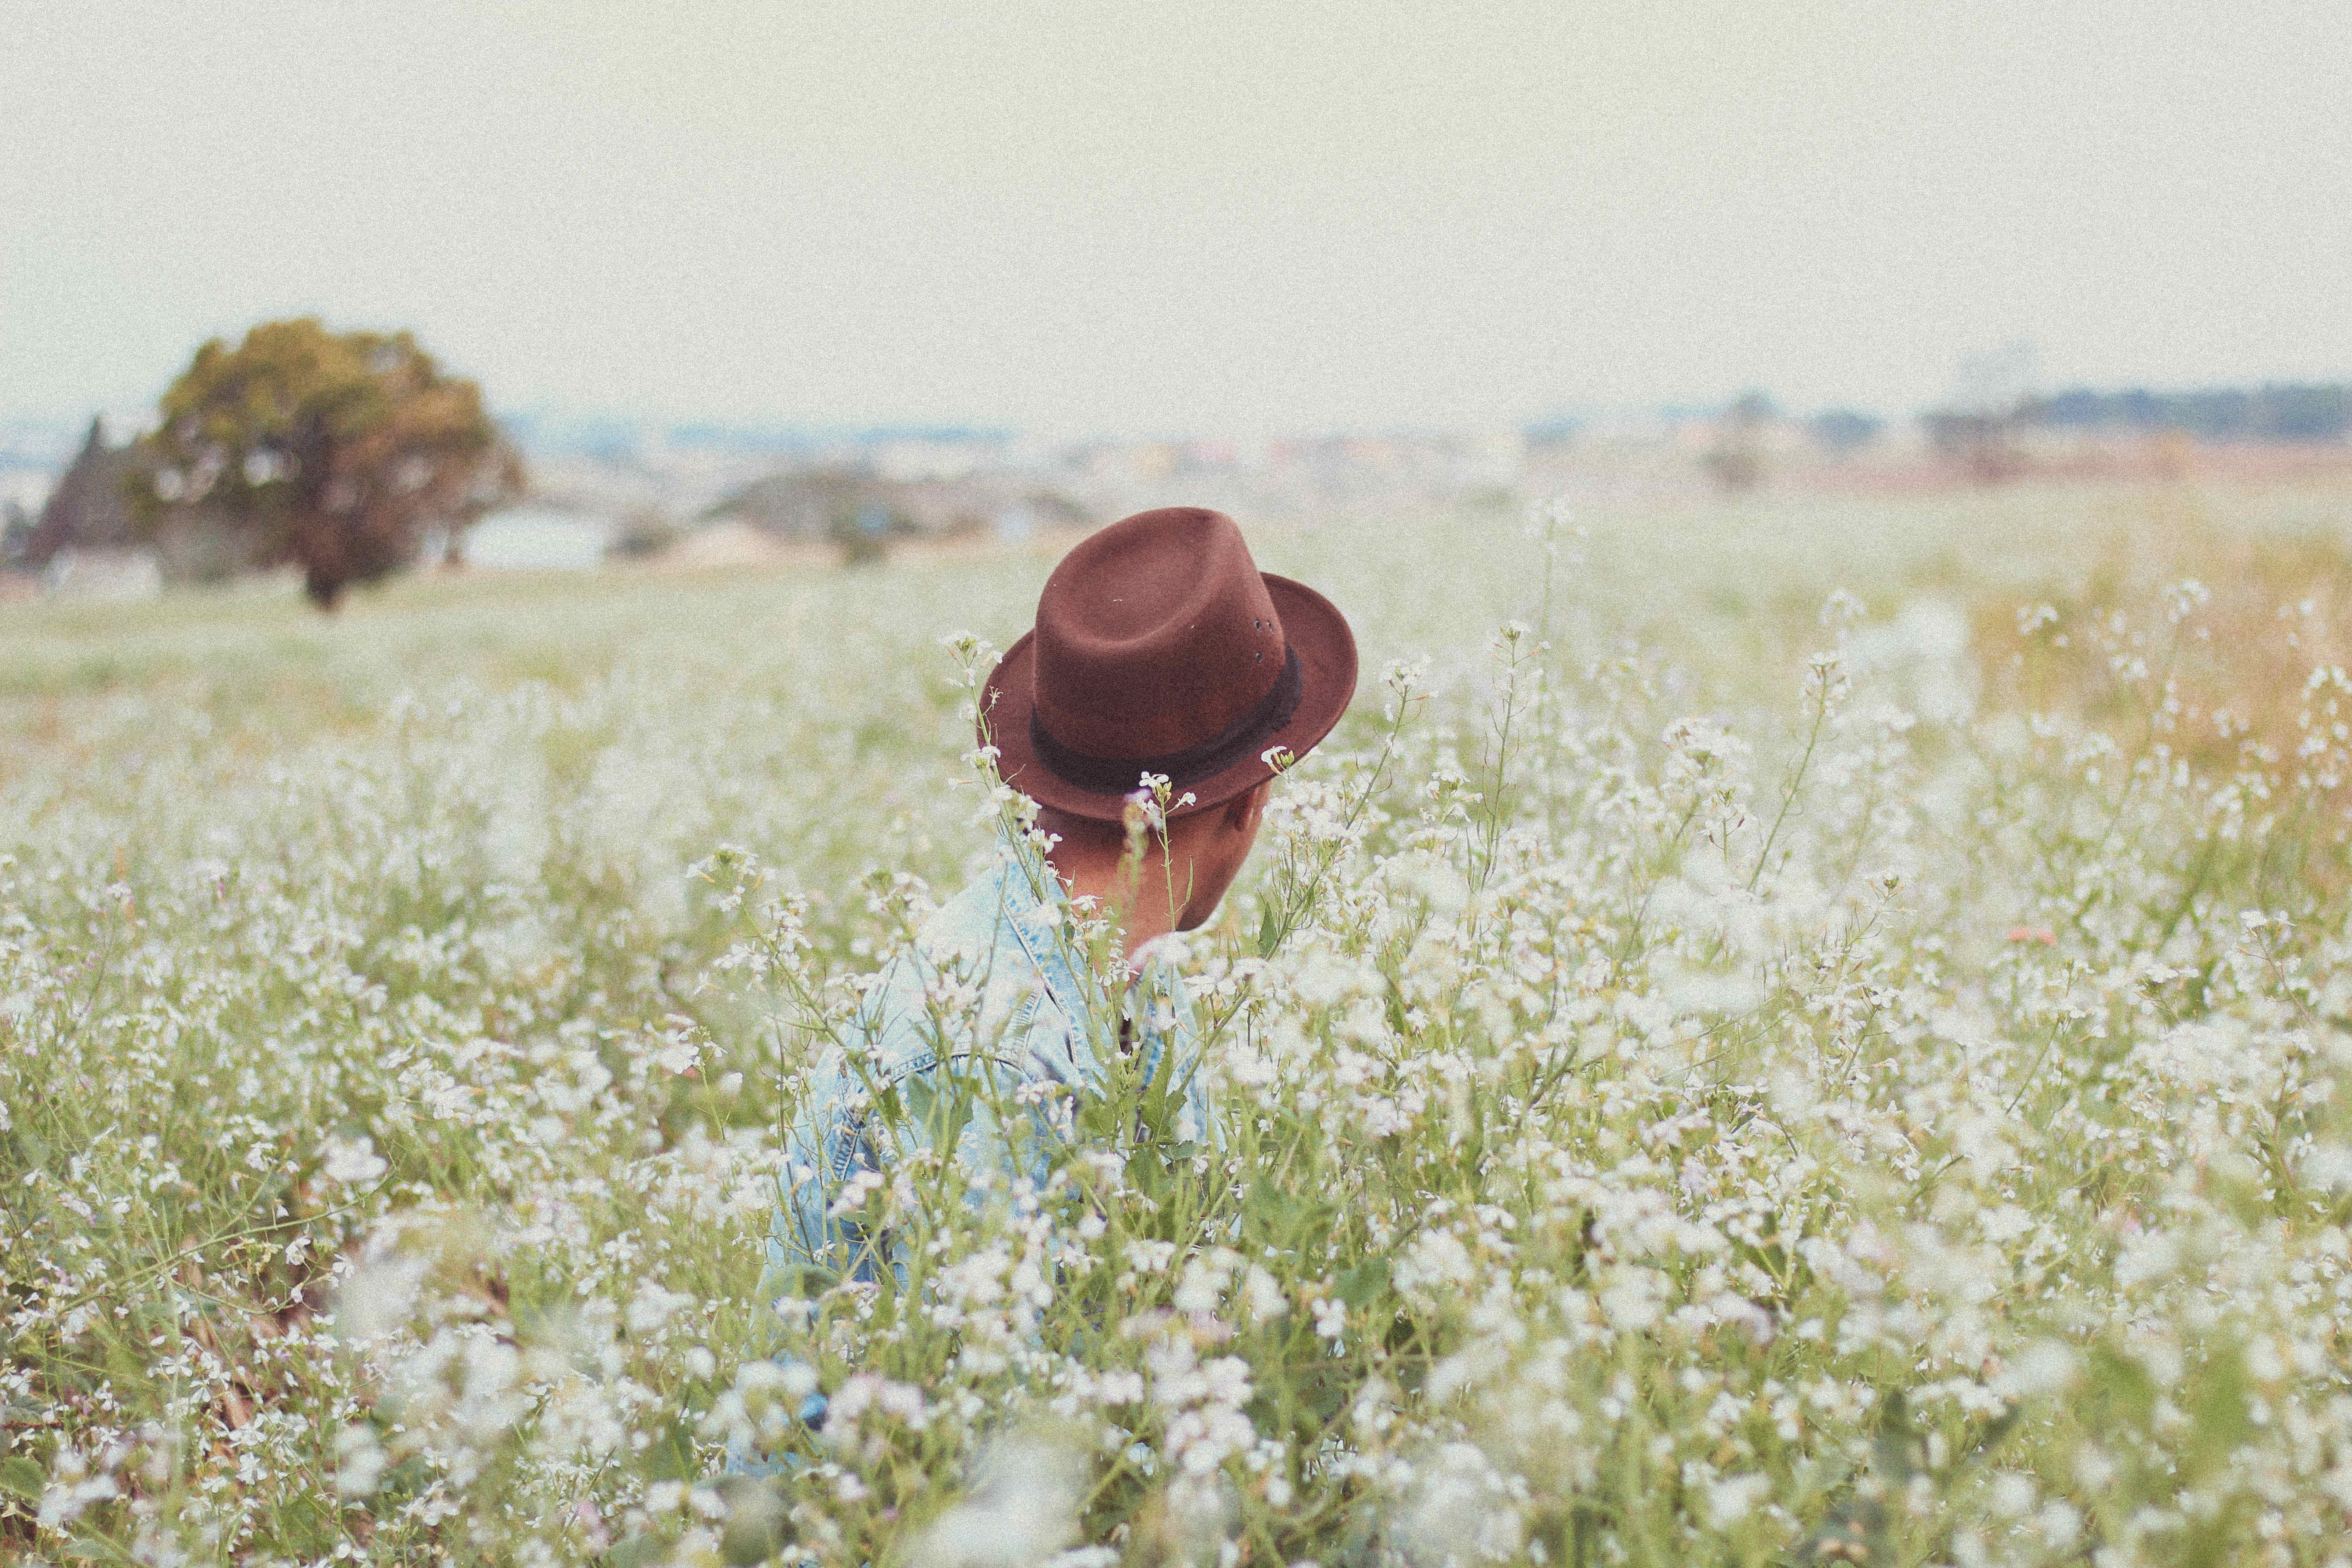 Молодые люди в поле. Человек в шляпе с полями. Фотосессия в поле летом. Мужчина в поле цветов. Человек в цветочном поле.